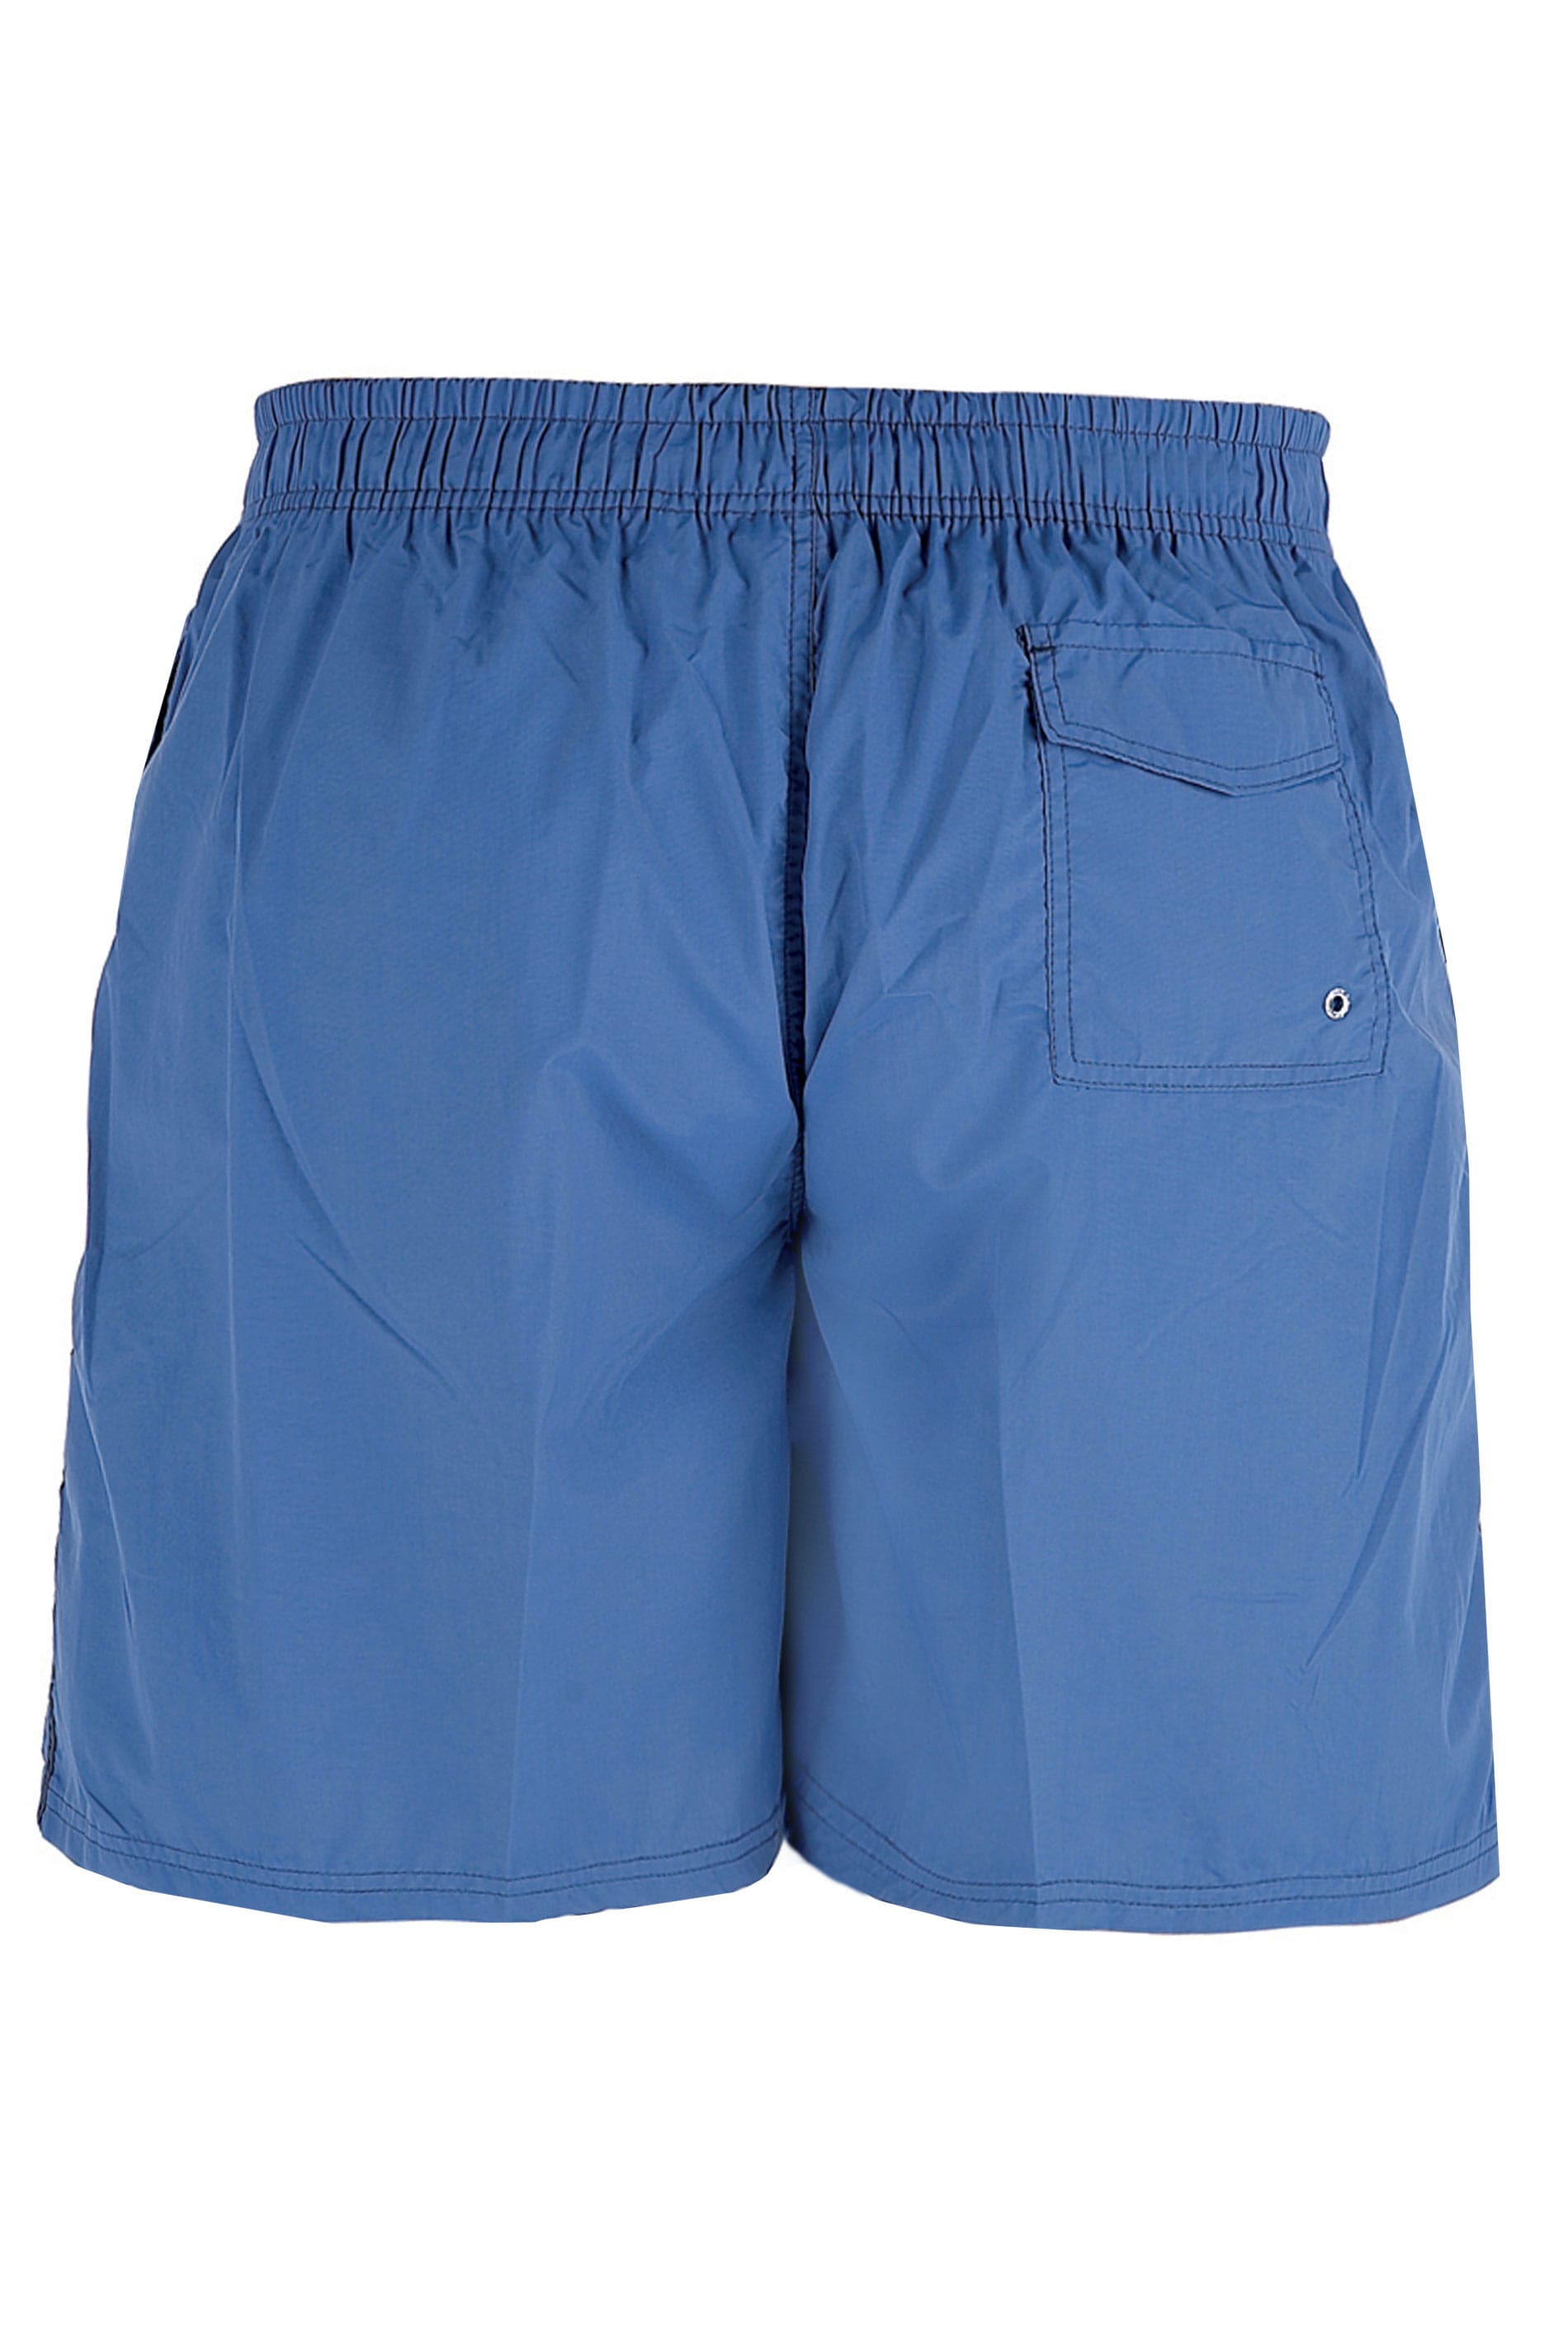 D555 Royal Blue Swim Shorts | BadRhino